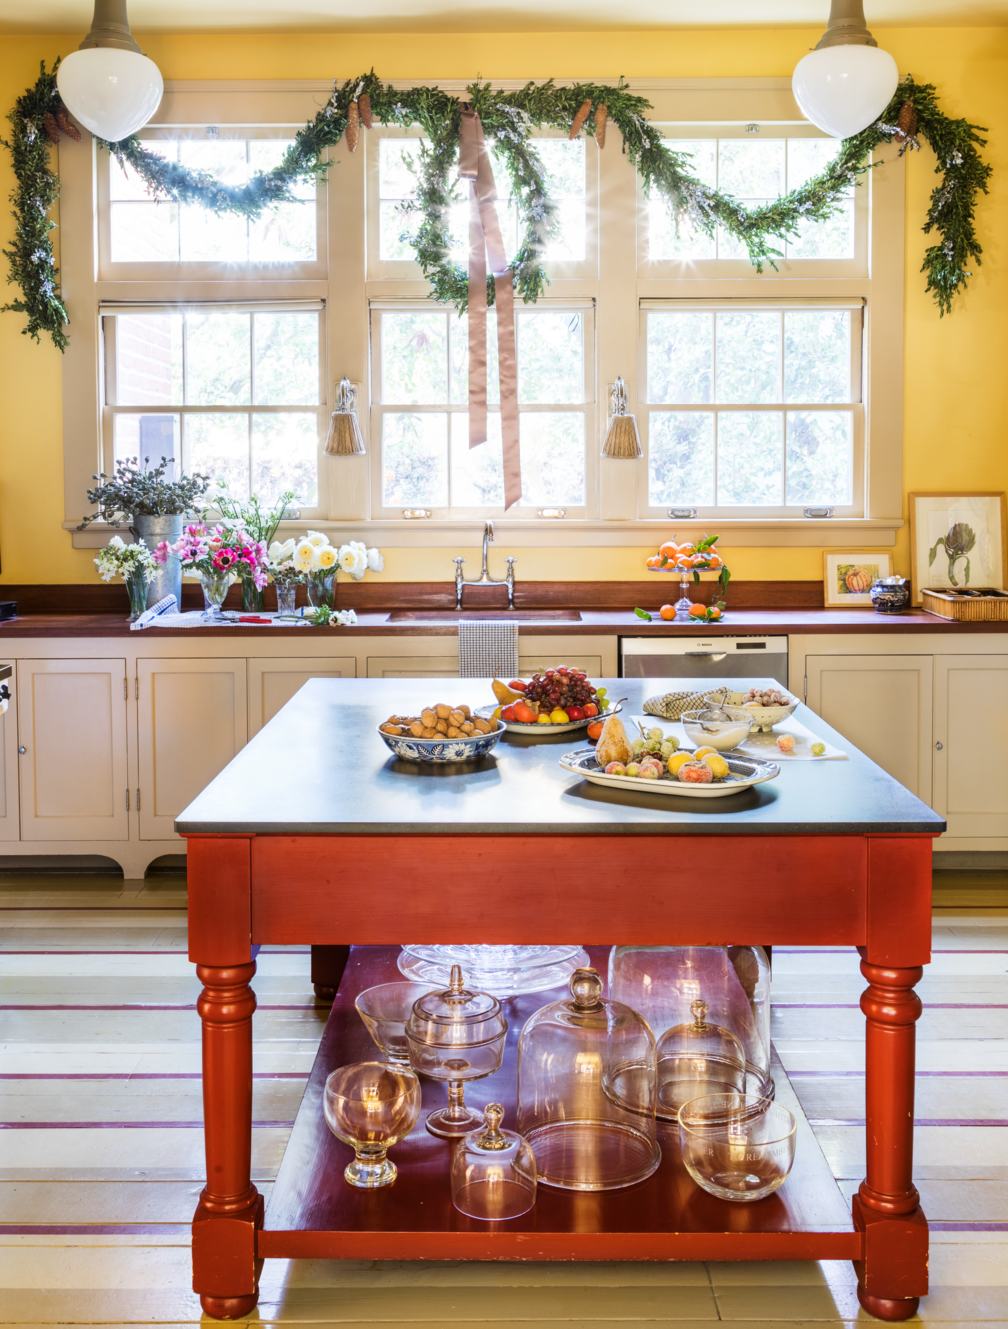 Impressive kitchen colors images 33 Best Kitchen Paint Colors 2020 Ideas For